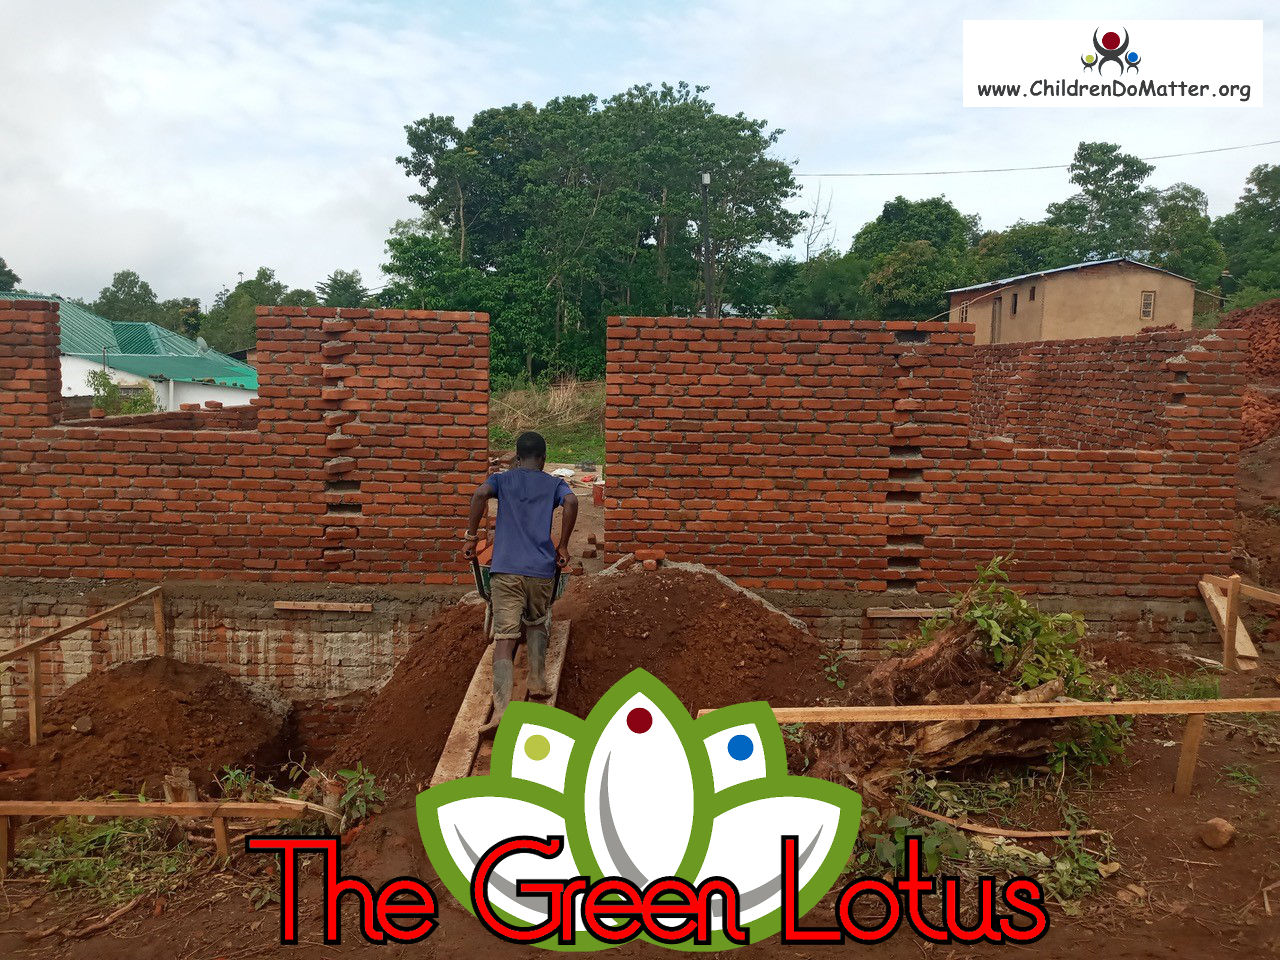 costruzione dell'orfanotrofio casa di accoglienza the green lotus a blantyre malawi - children do matter - 12